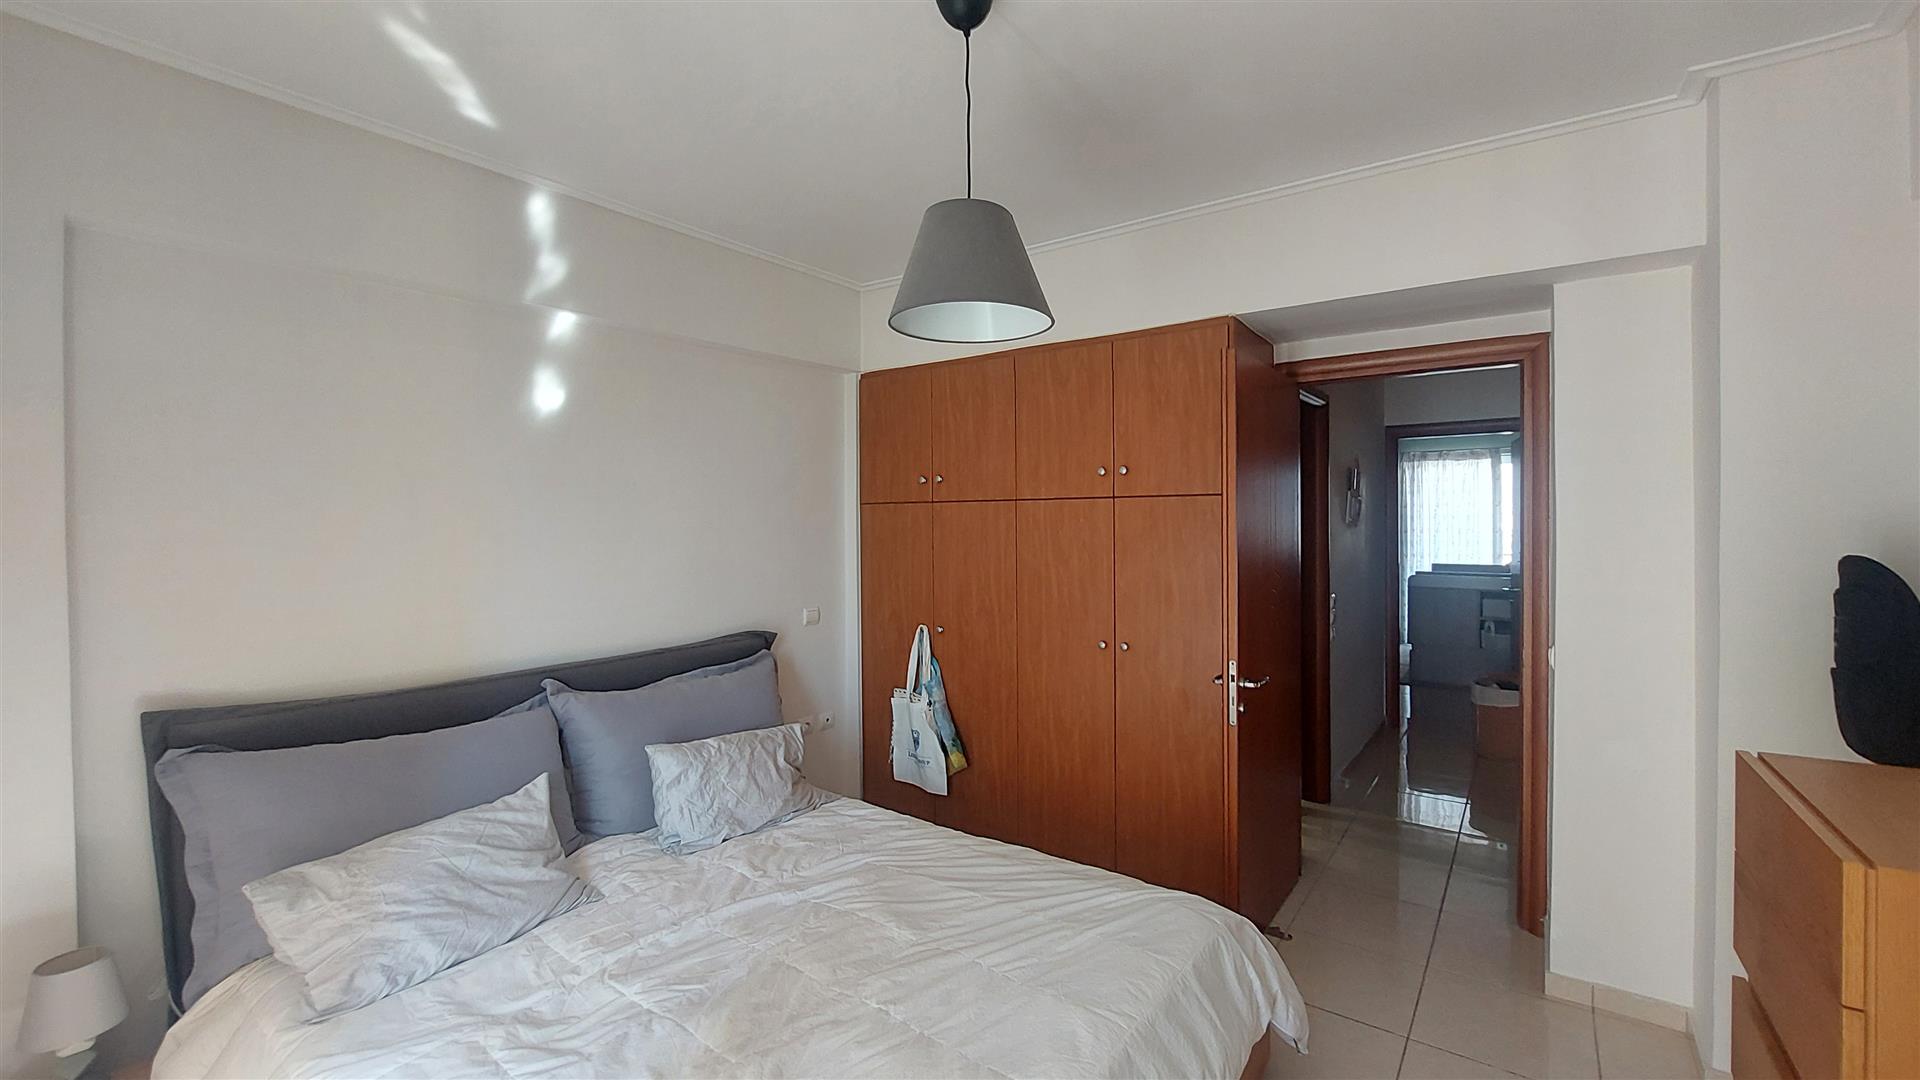 2 bedroom apartment in Piraeus 